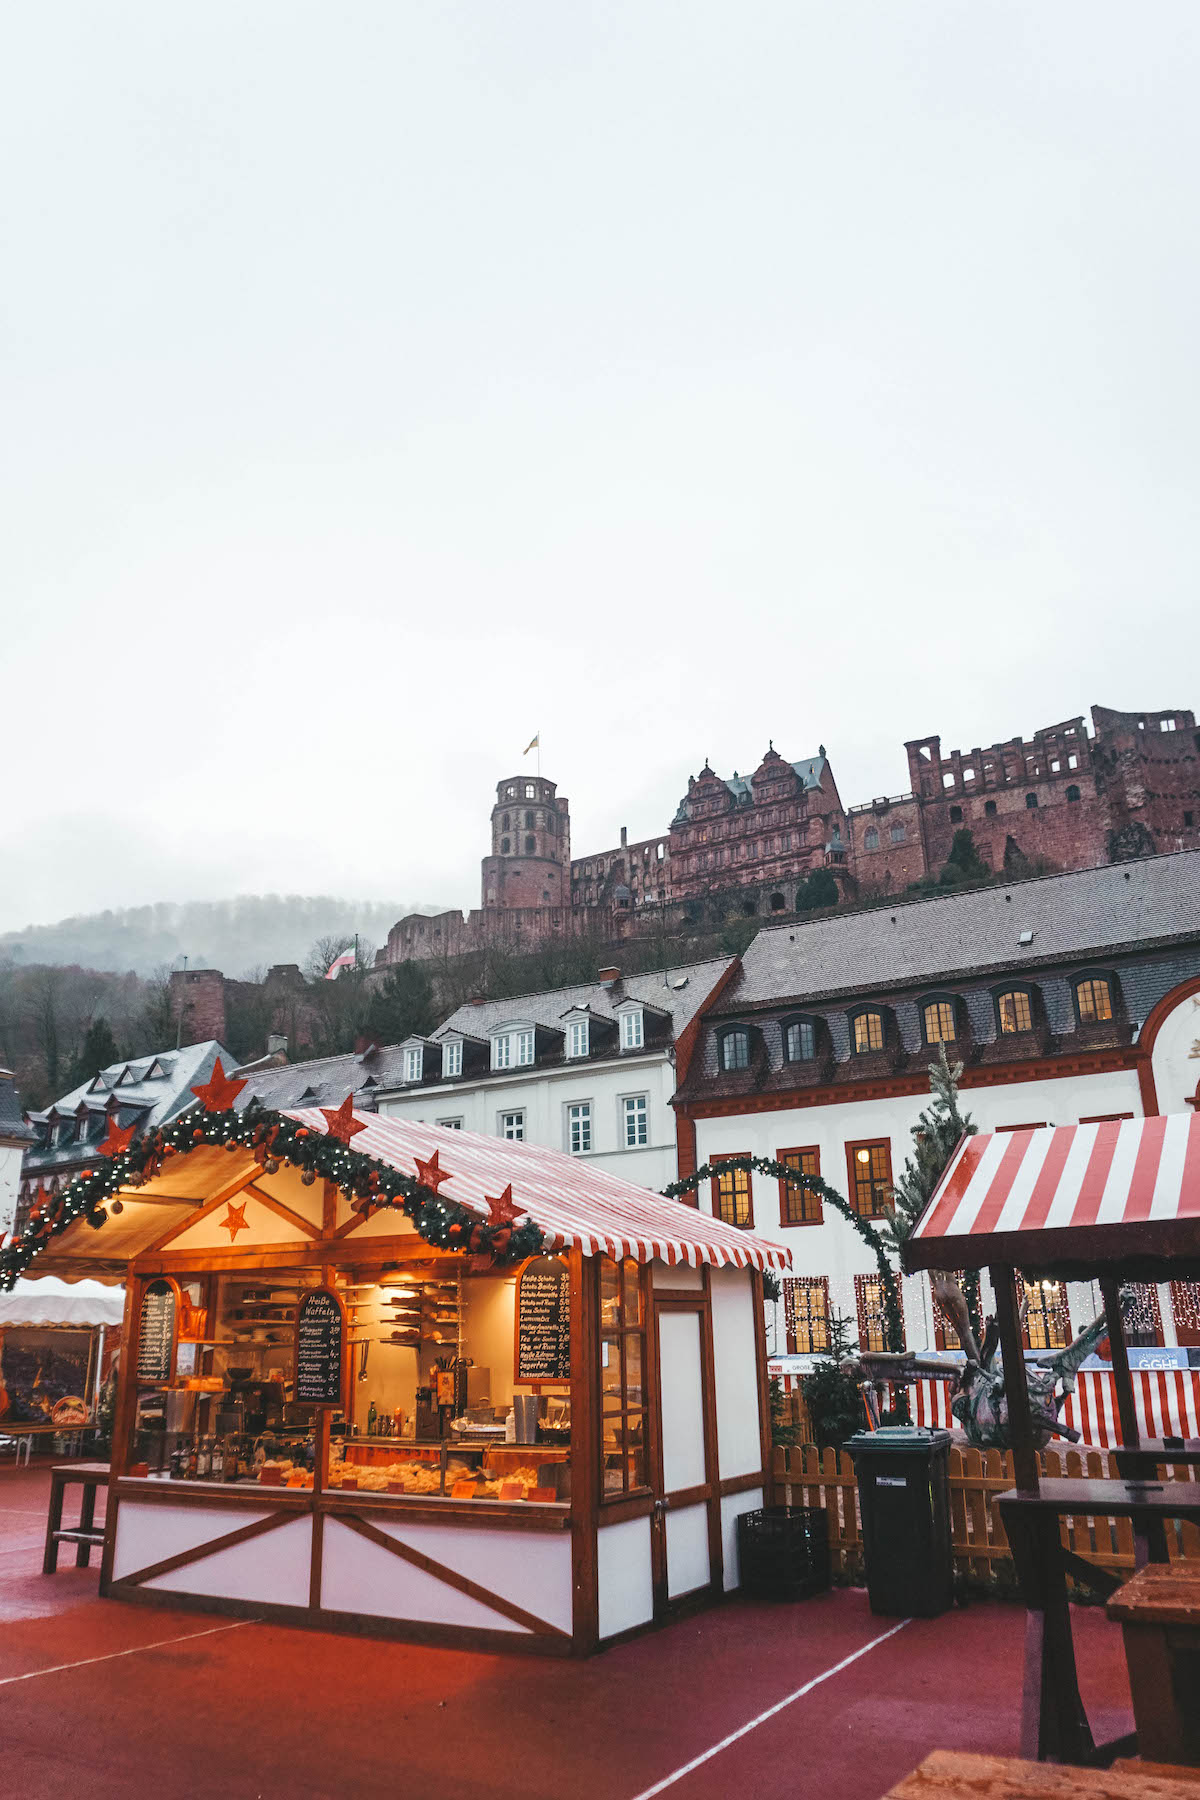 The Christmas market at Karlsplatz in Heidelberg, Germany. 